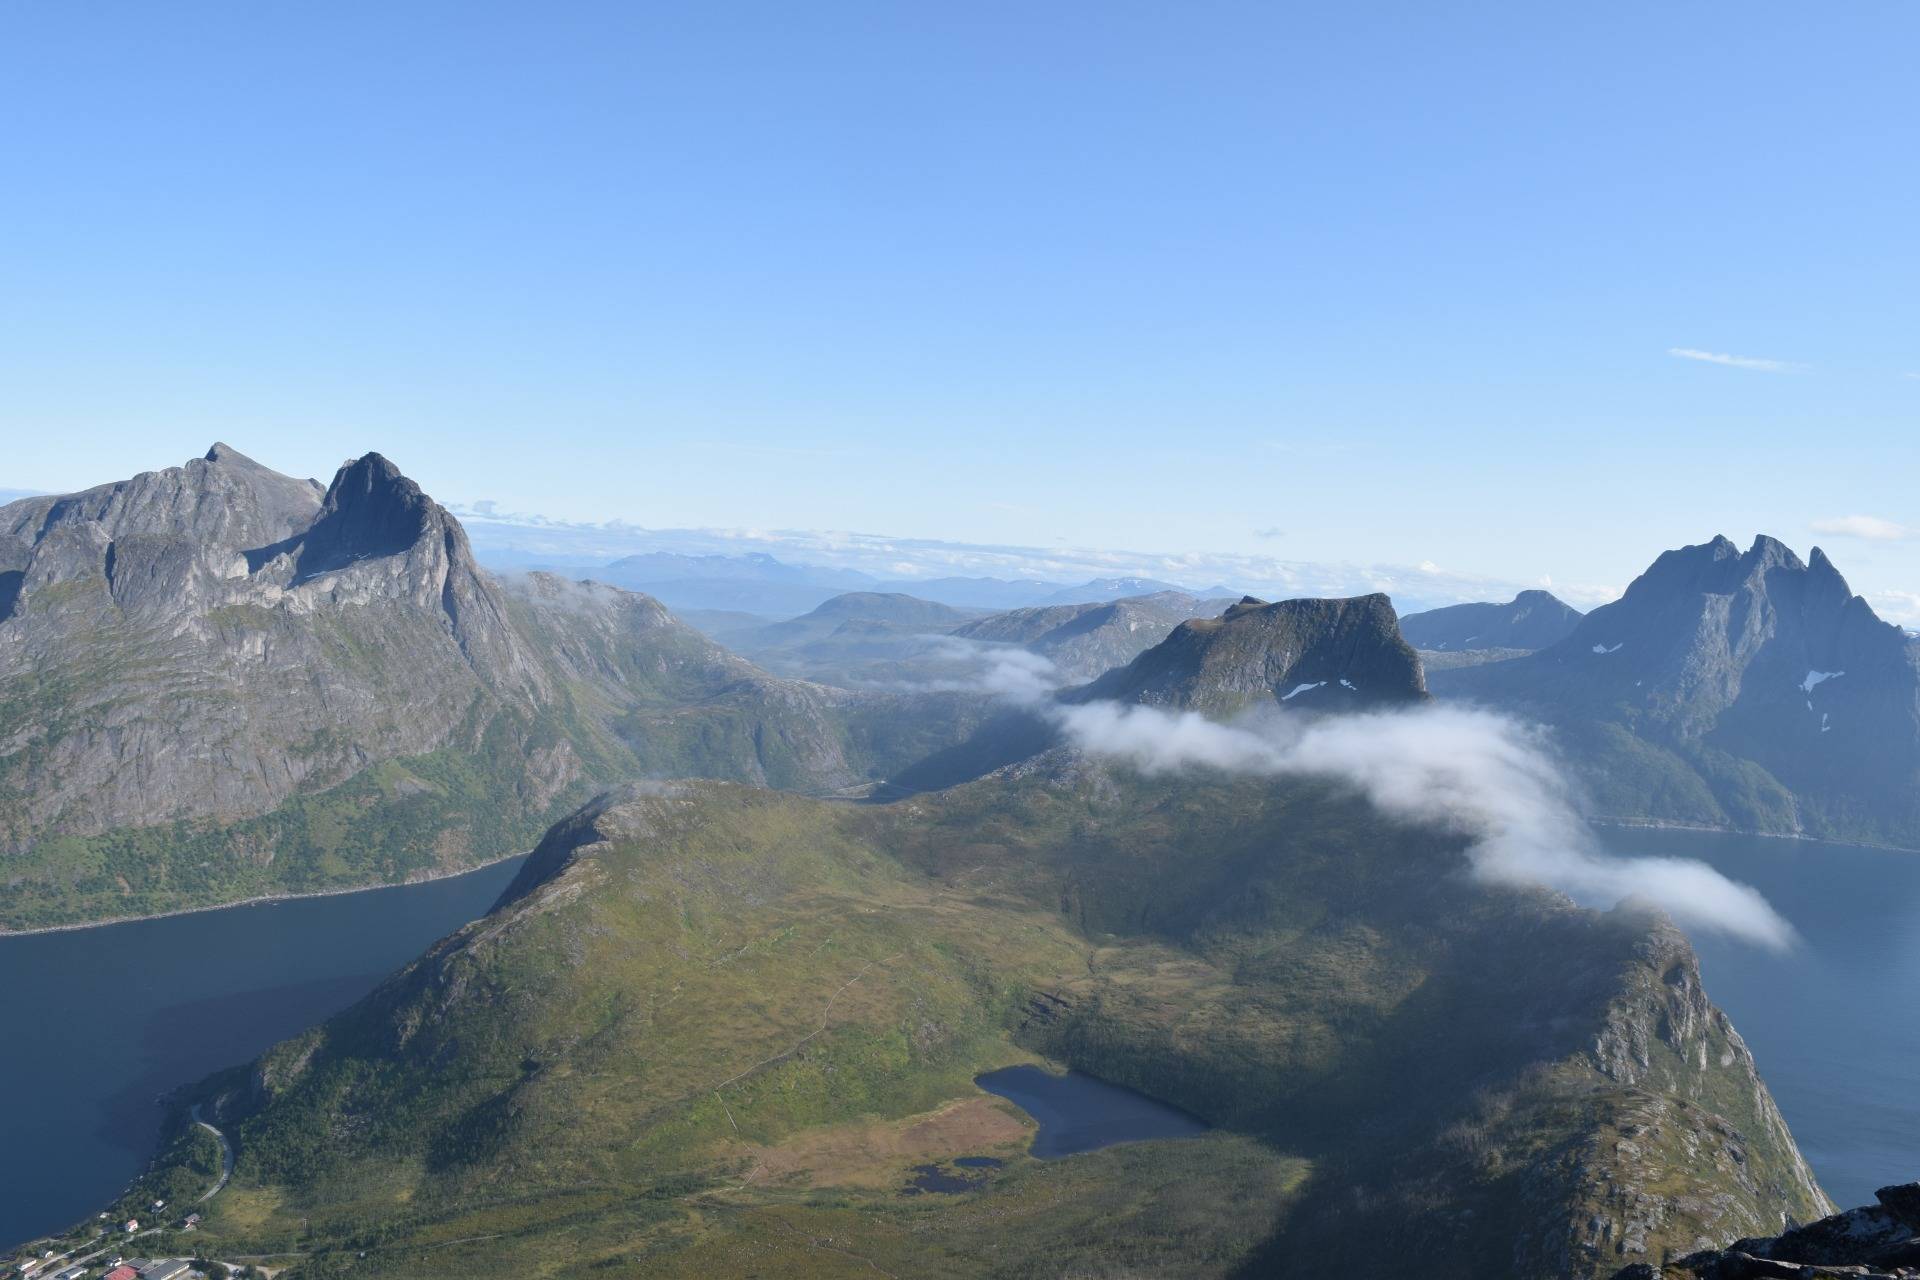 Hiking Mount Segla - Norway